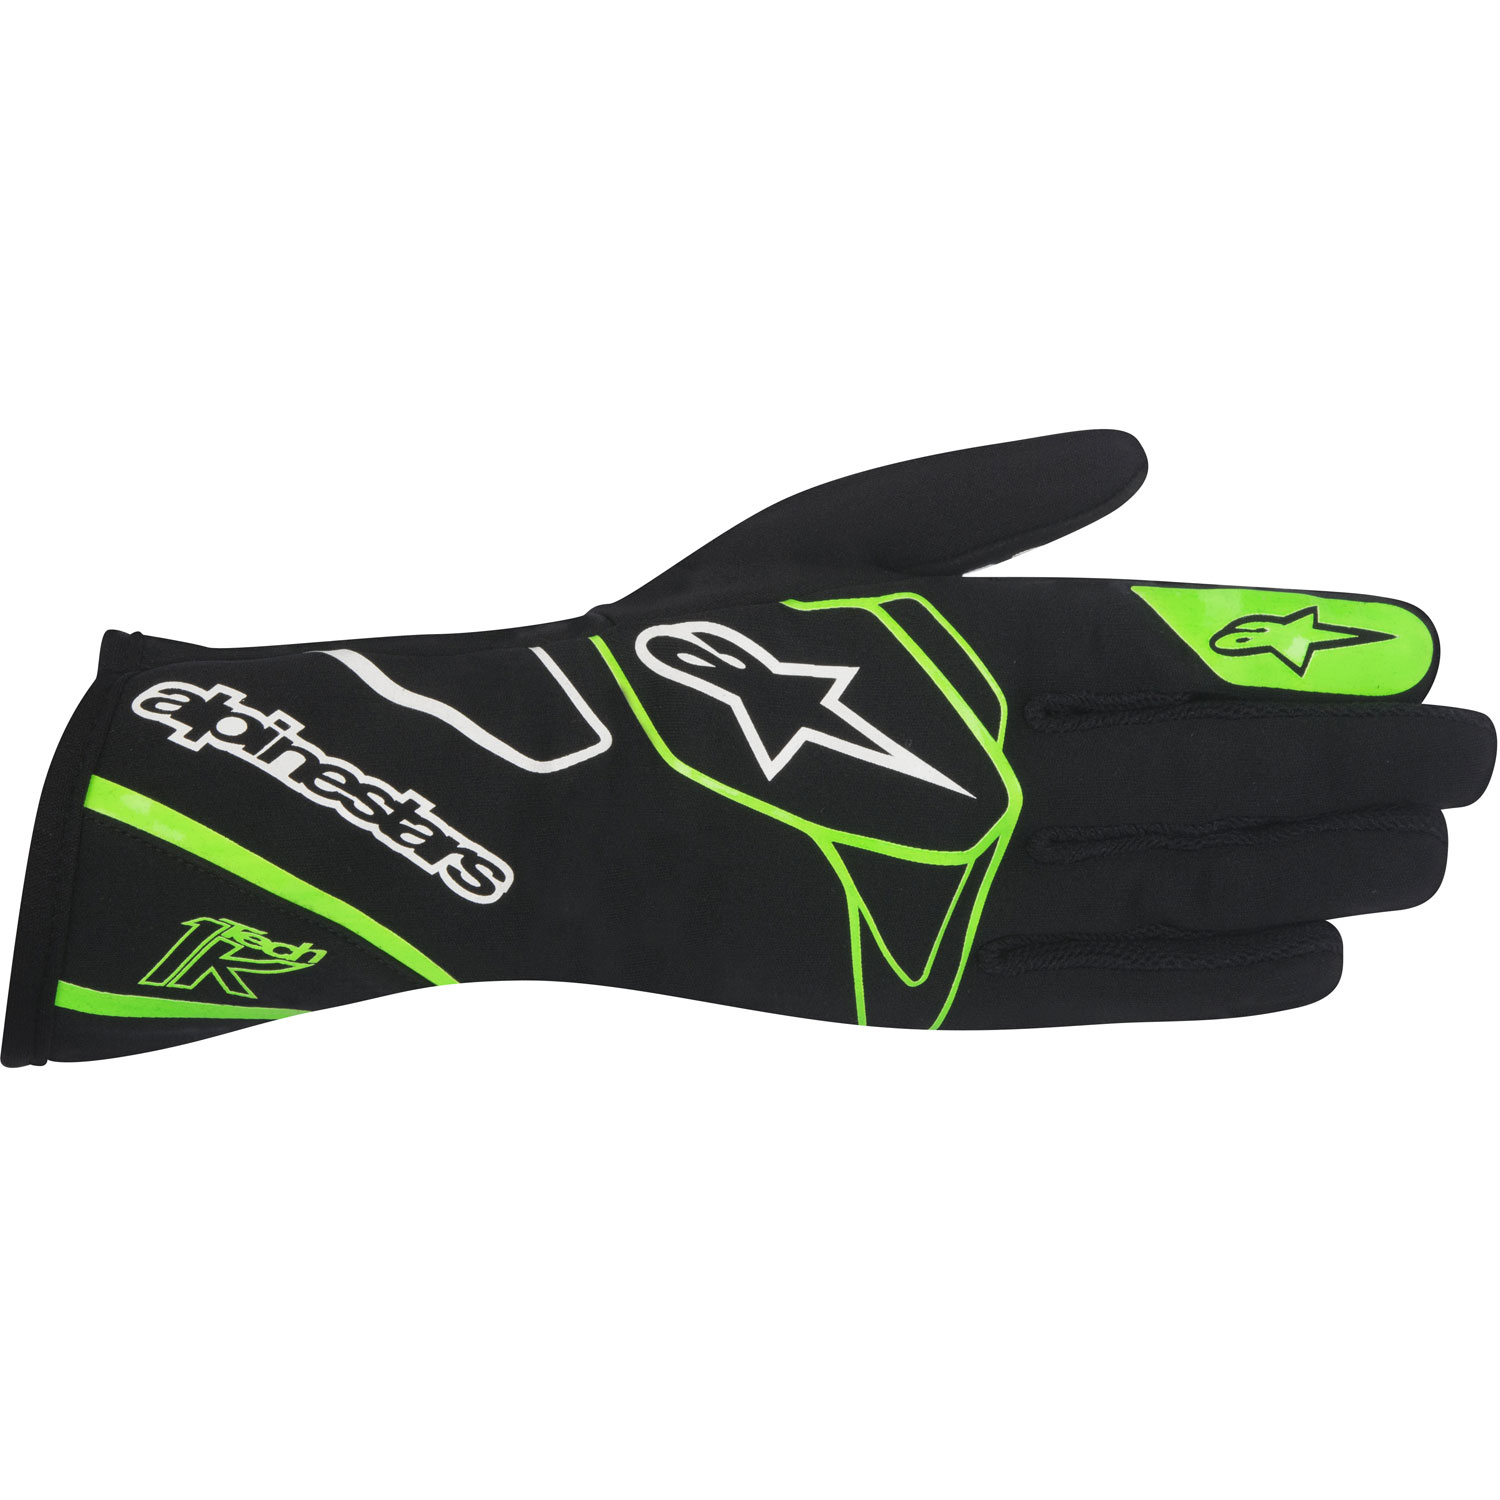 Tech 1-K Gloves Black/Green Fluorescent